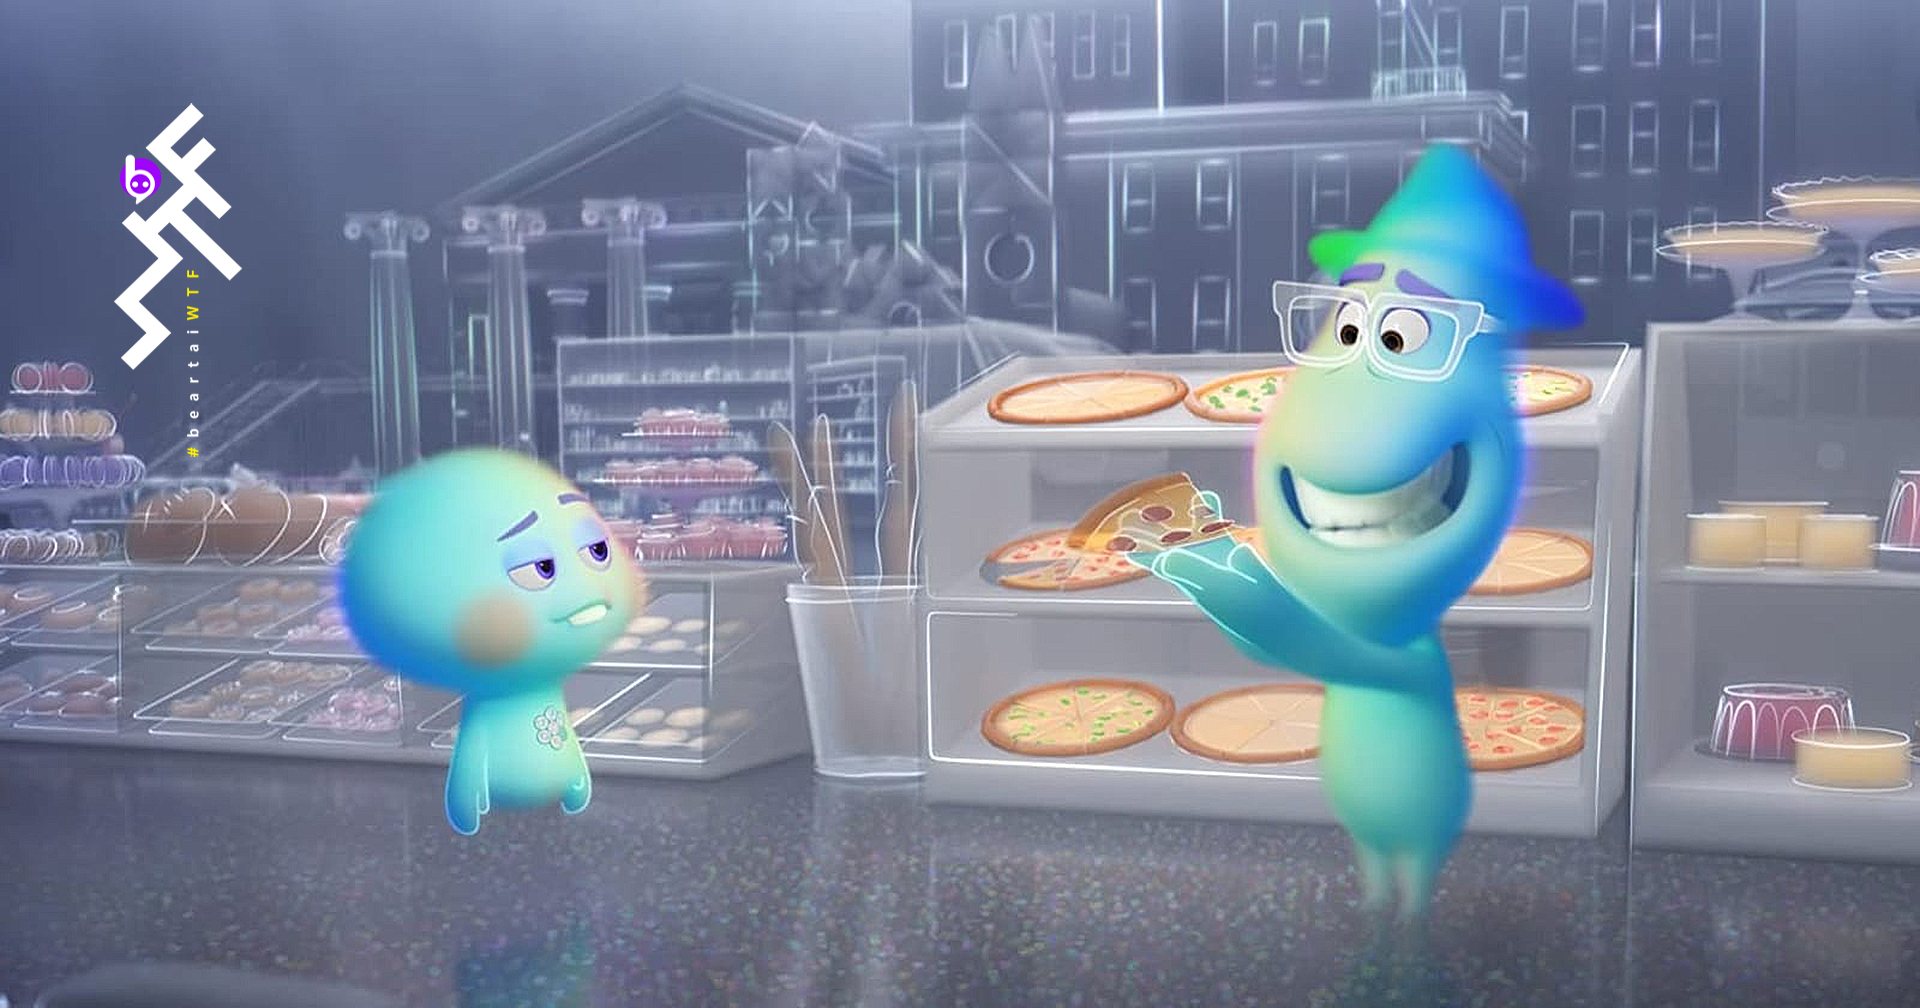 โดนไปอีกเรื่อง : แอนิเมชัน Soul ของ Pixar จะฉายทาง Disney+ แทน